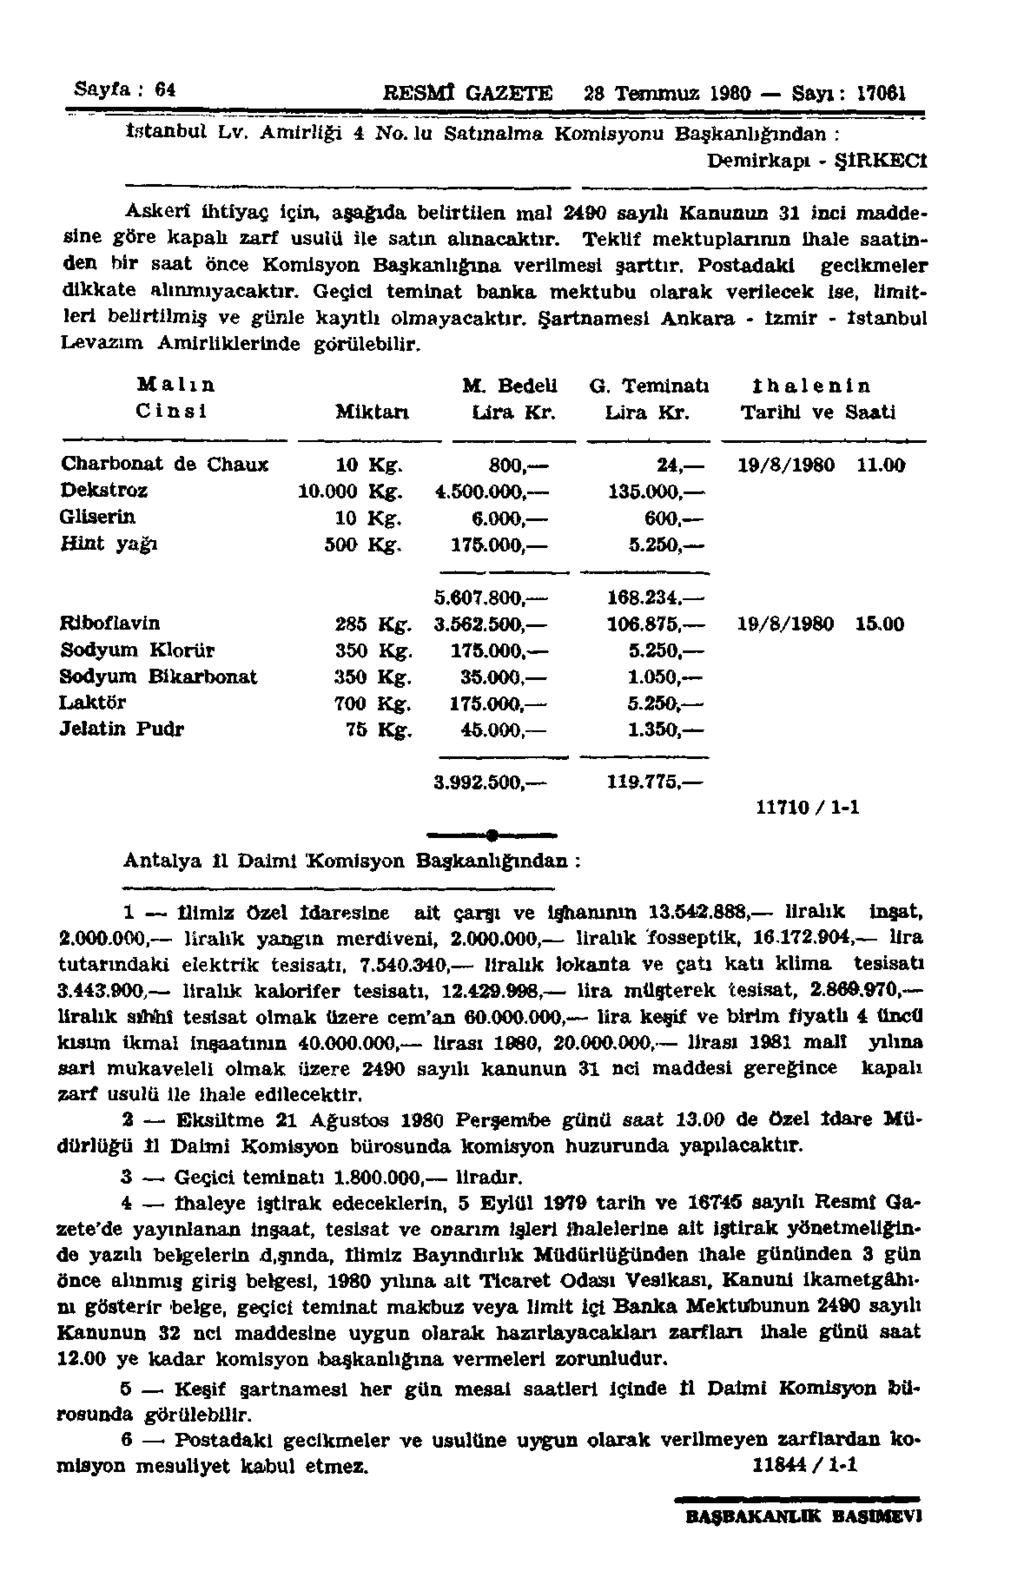 Sayfa : 64 RESMÎ GAZETE 28 Temmuz 1980 Sayı: 17061 İstanbul Lv. Amirliği 4 No.